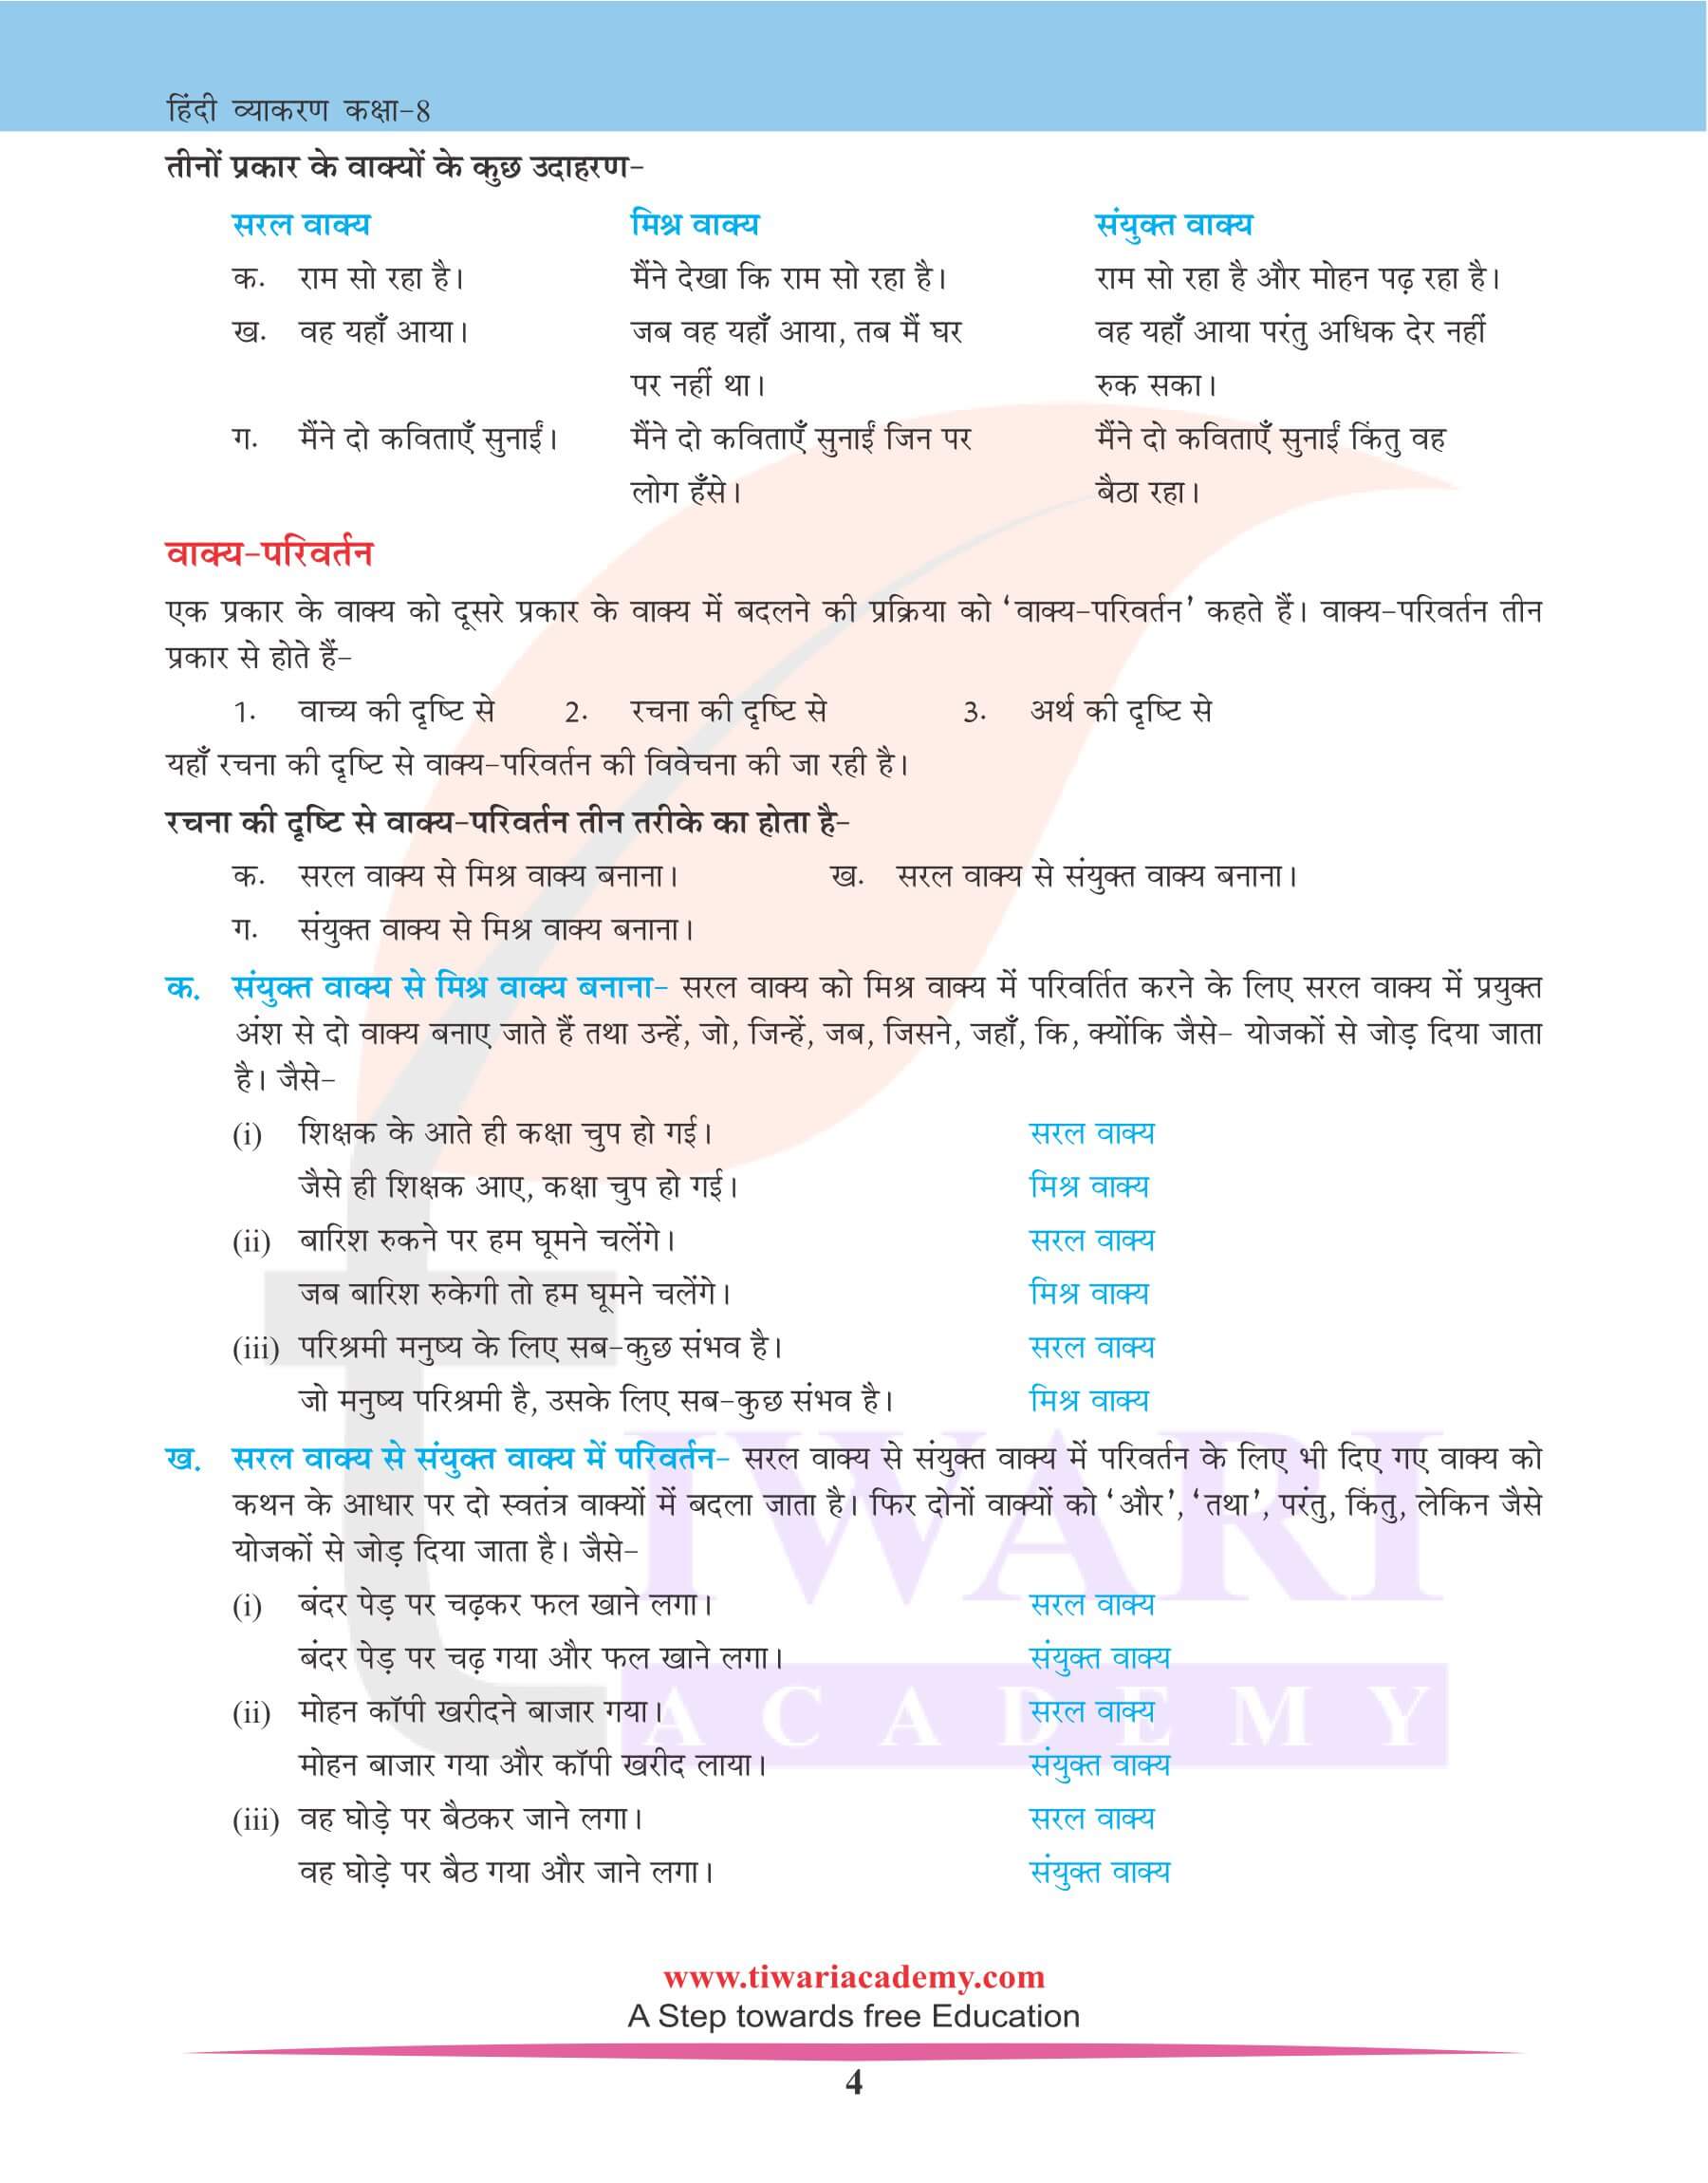 कक्षा 8 हिंदी व्याकरण वाक्य विचार के उदाहरण